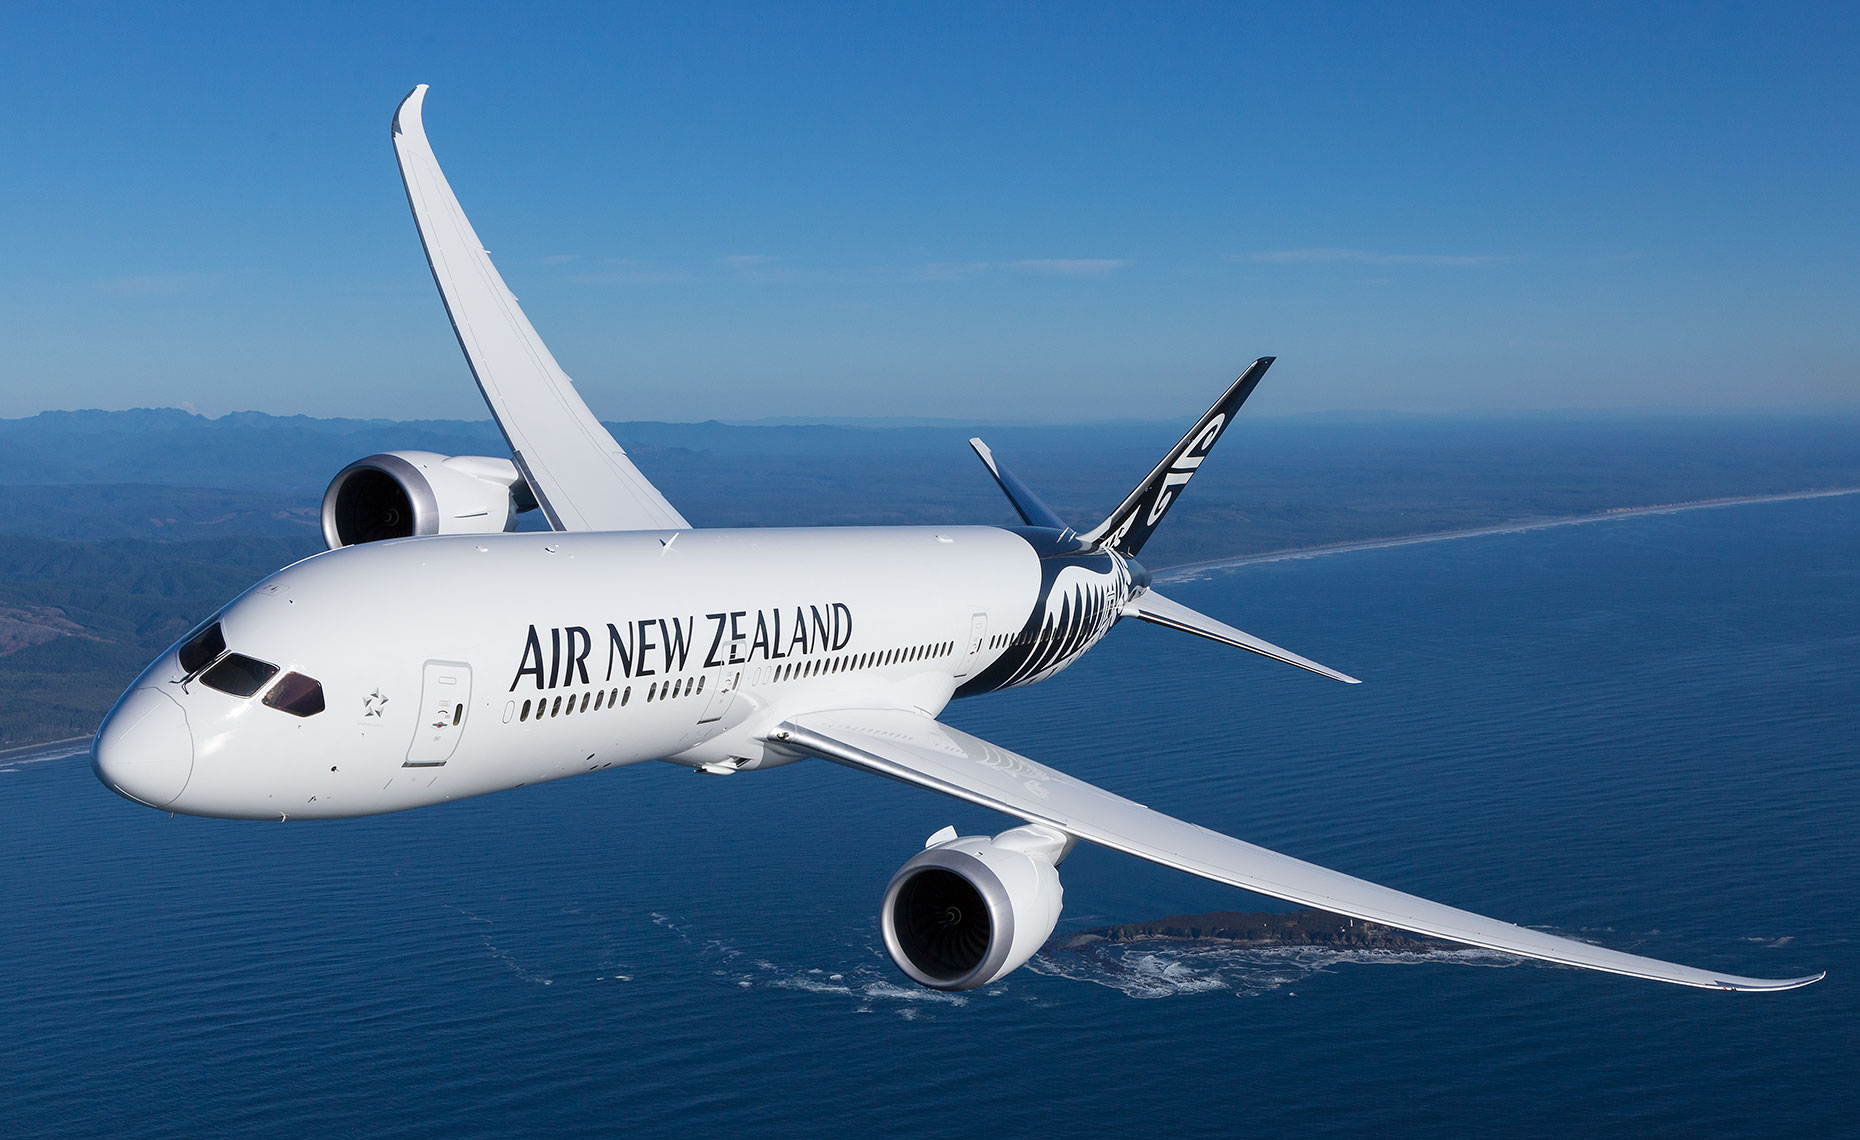 NZ 789 (Air New Zealand)